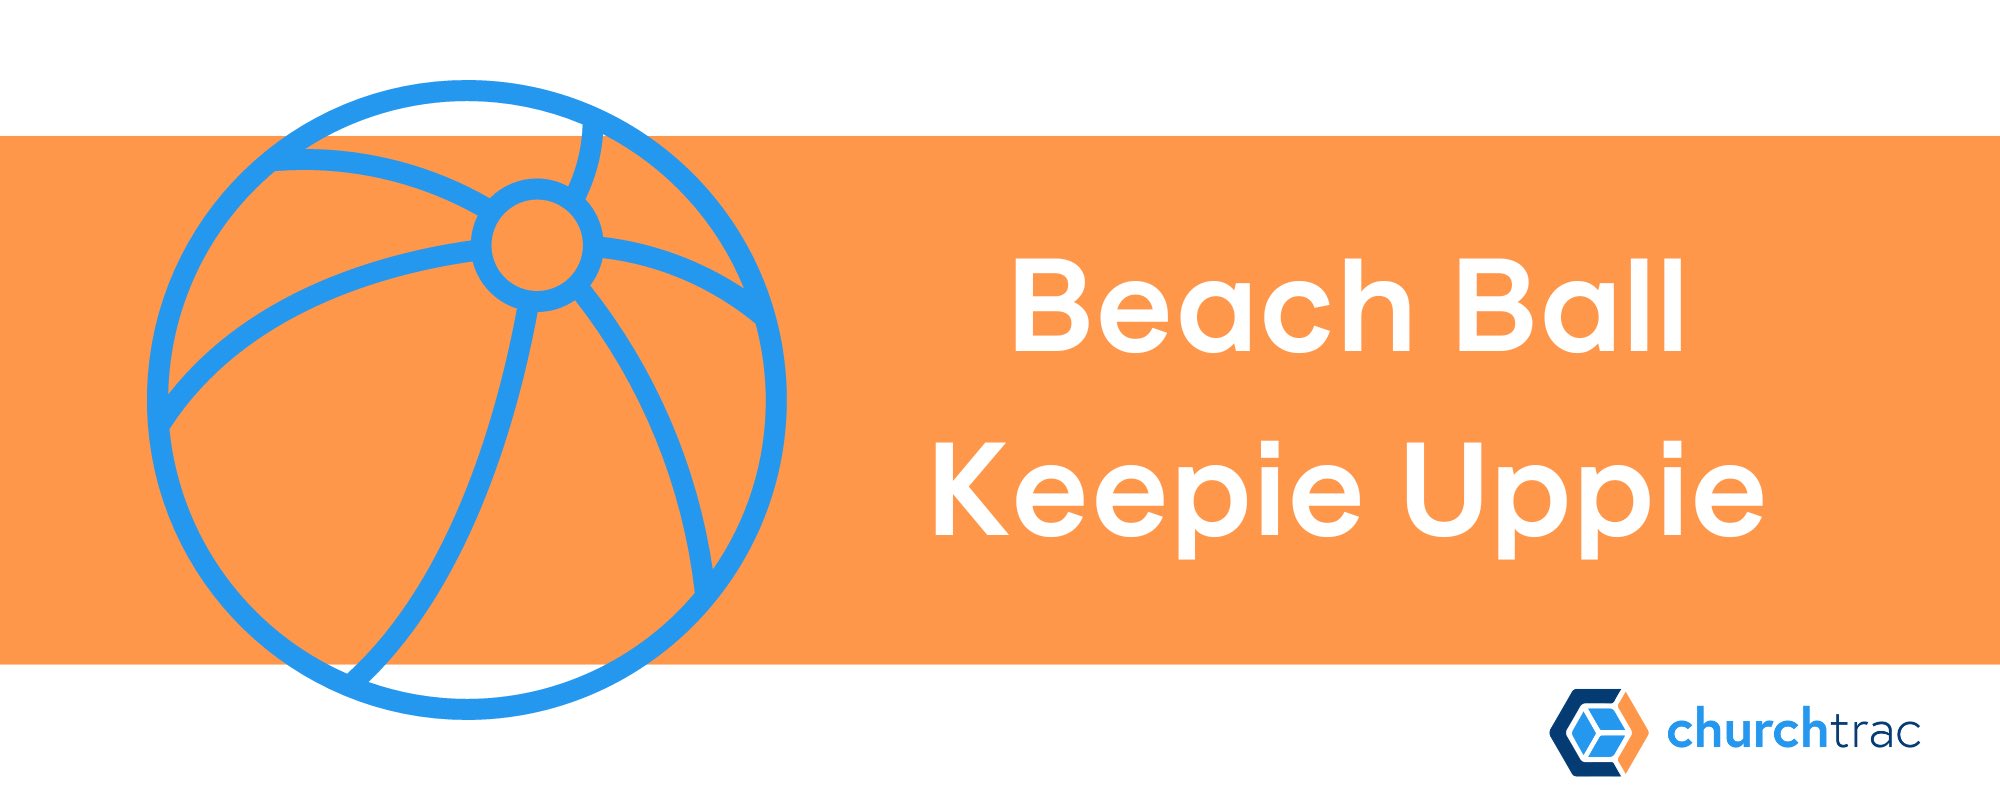 Beach Ball Keepie Uppie is a fun VBS Outdoor Game Idea